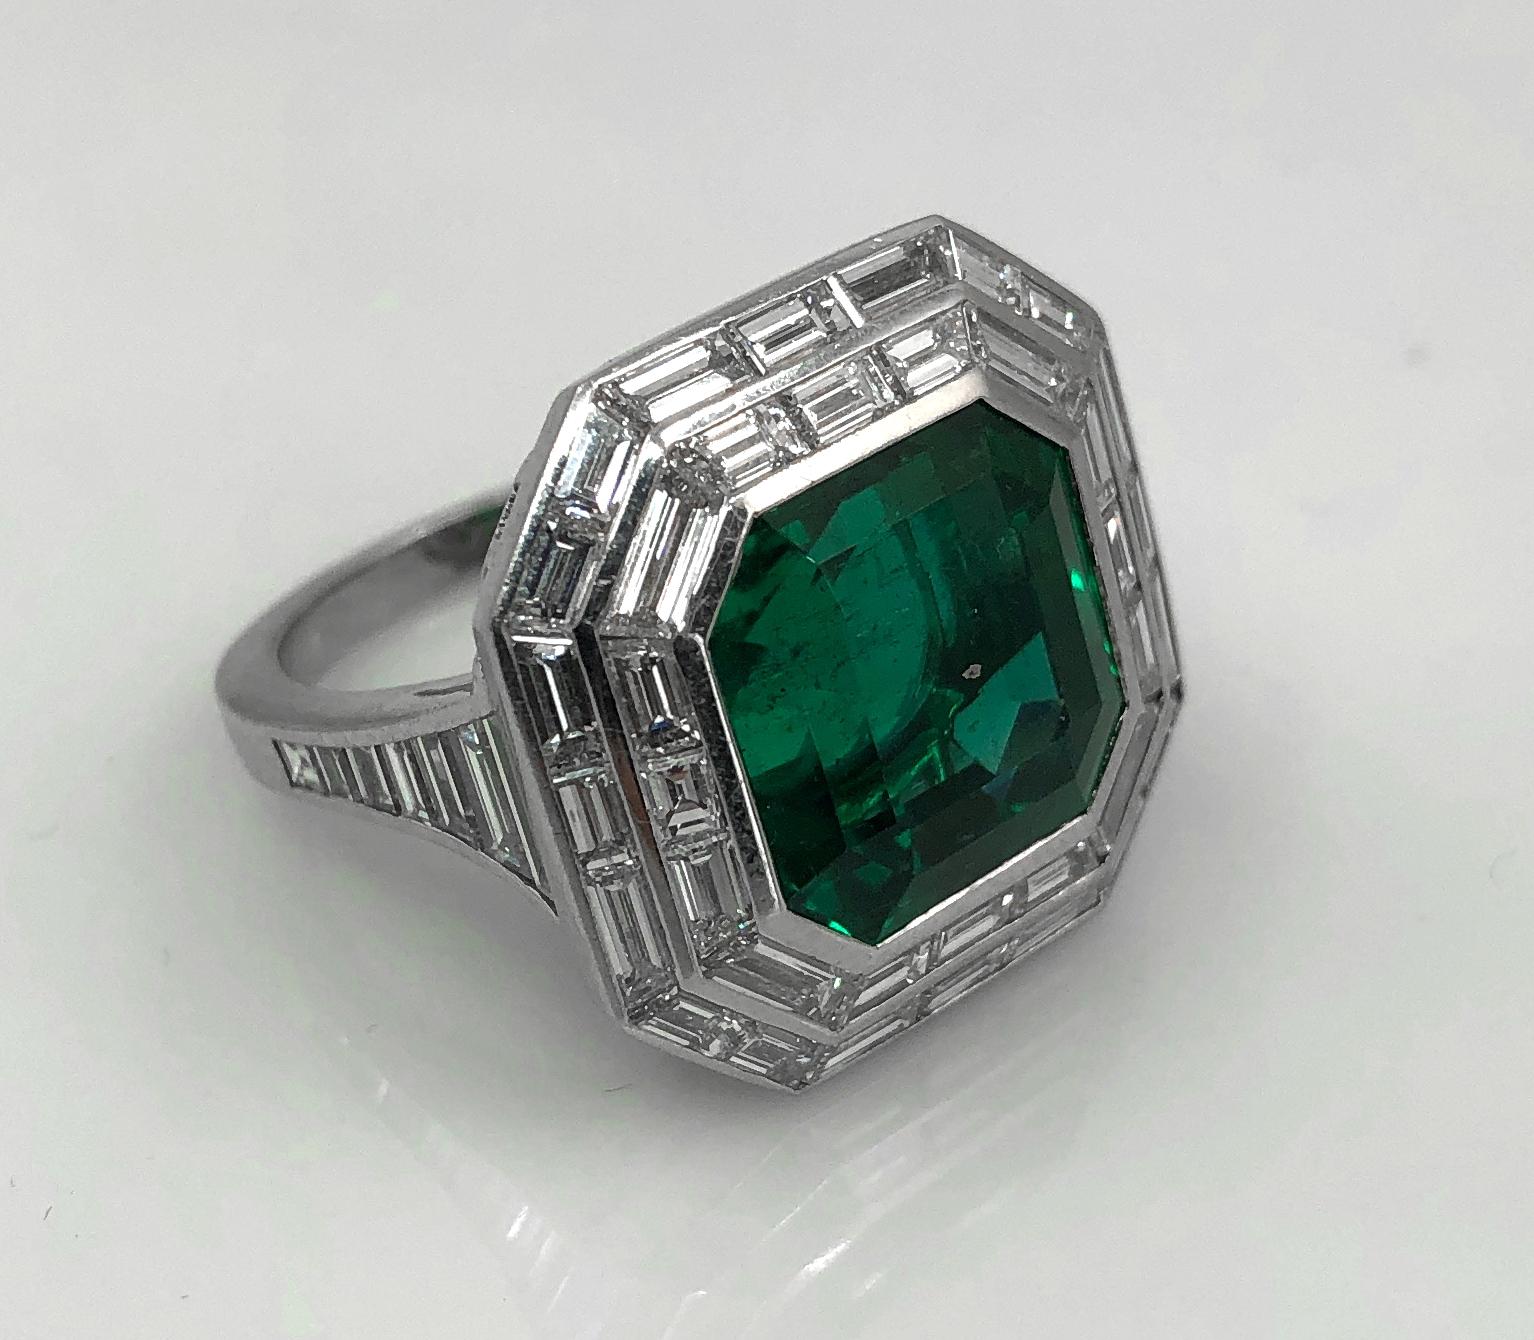 11 carat emerald cut diamond